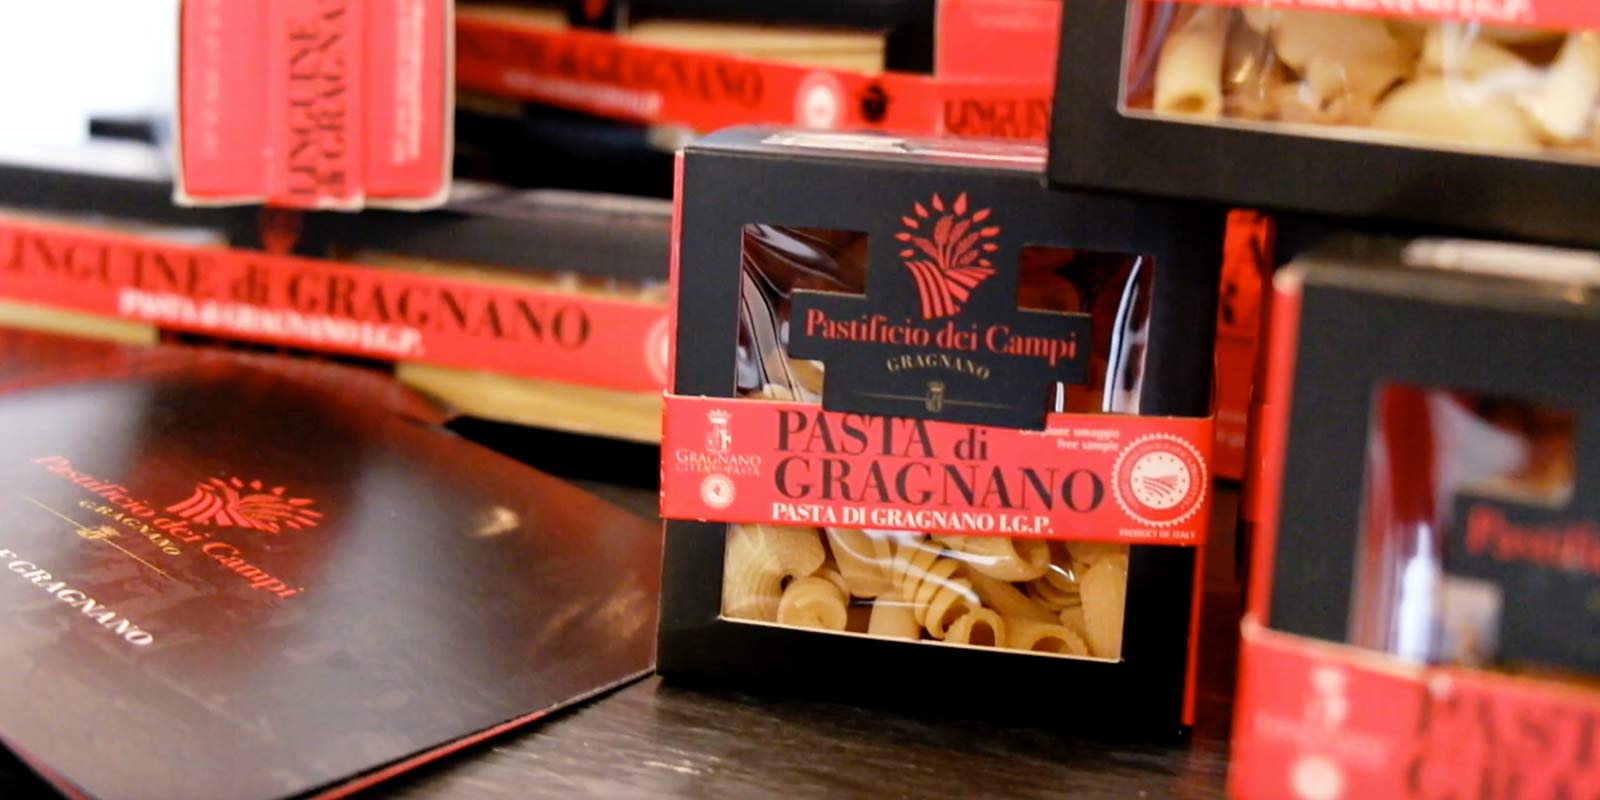 Pastifico dei Campi - Pasta di Gragnano IGP Pastificio dei Campi prodhon disa klasike italiane dhe disa krijime origjinale. Makaronat jane bere nga bollgur 100% italiane te grurit te forte dhe te ekstruduara duke perdorur kallepe bronzi.